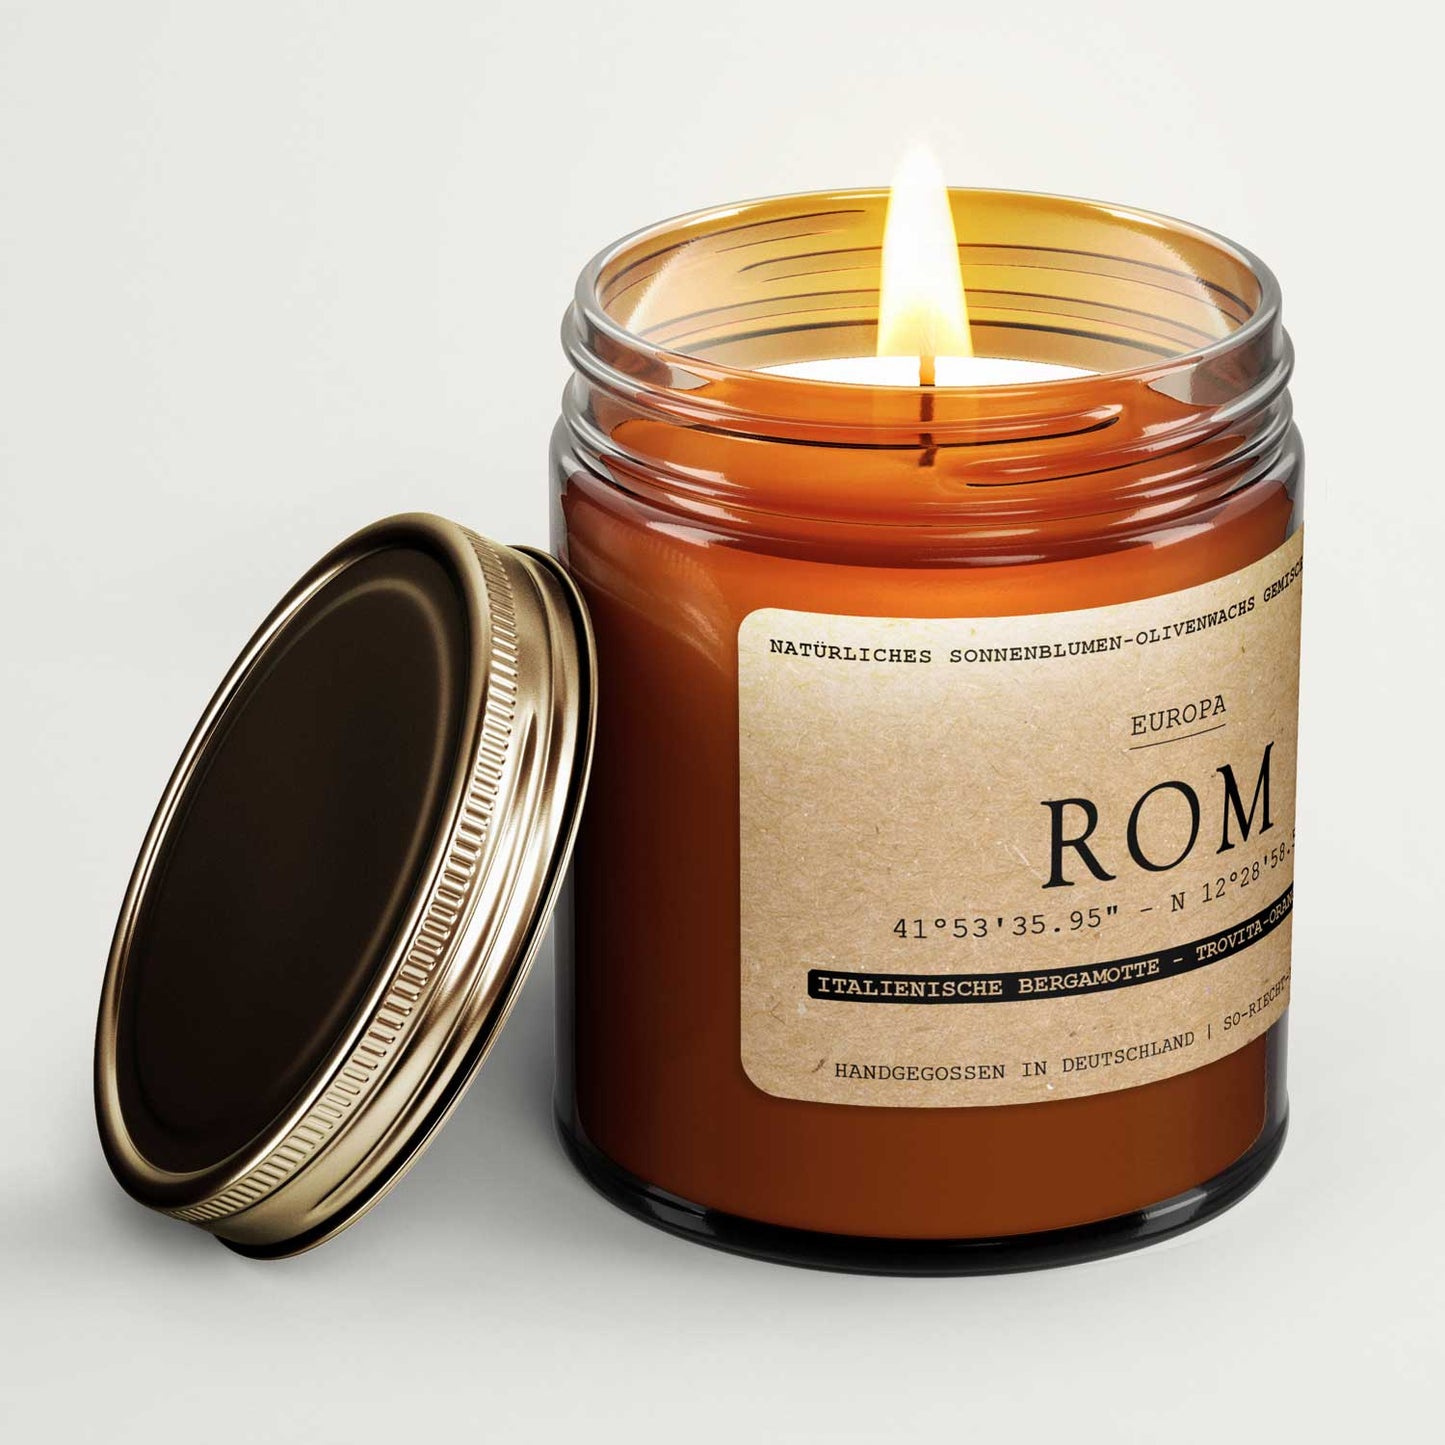 Rom Kerze -  Italienische Bergamotte | Trovita-Orange | Limette